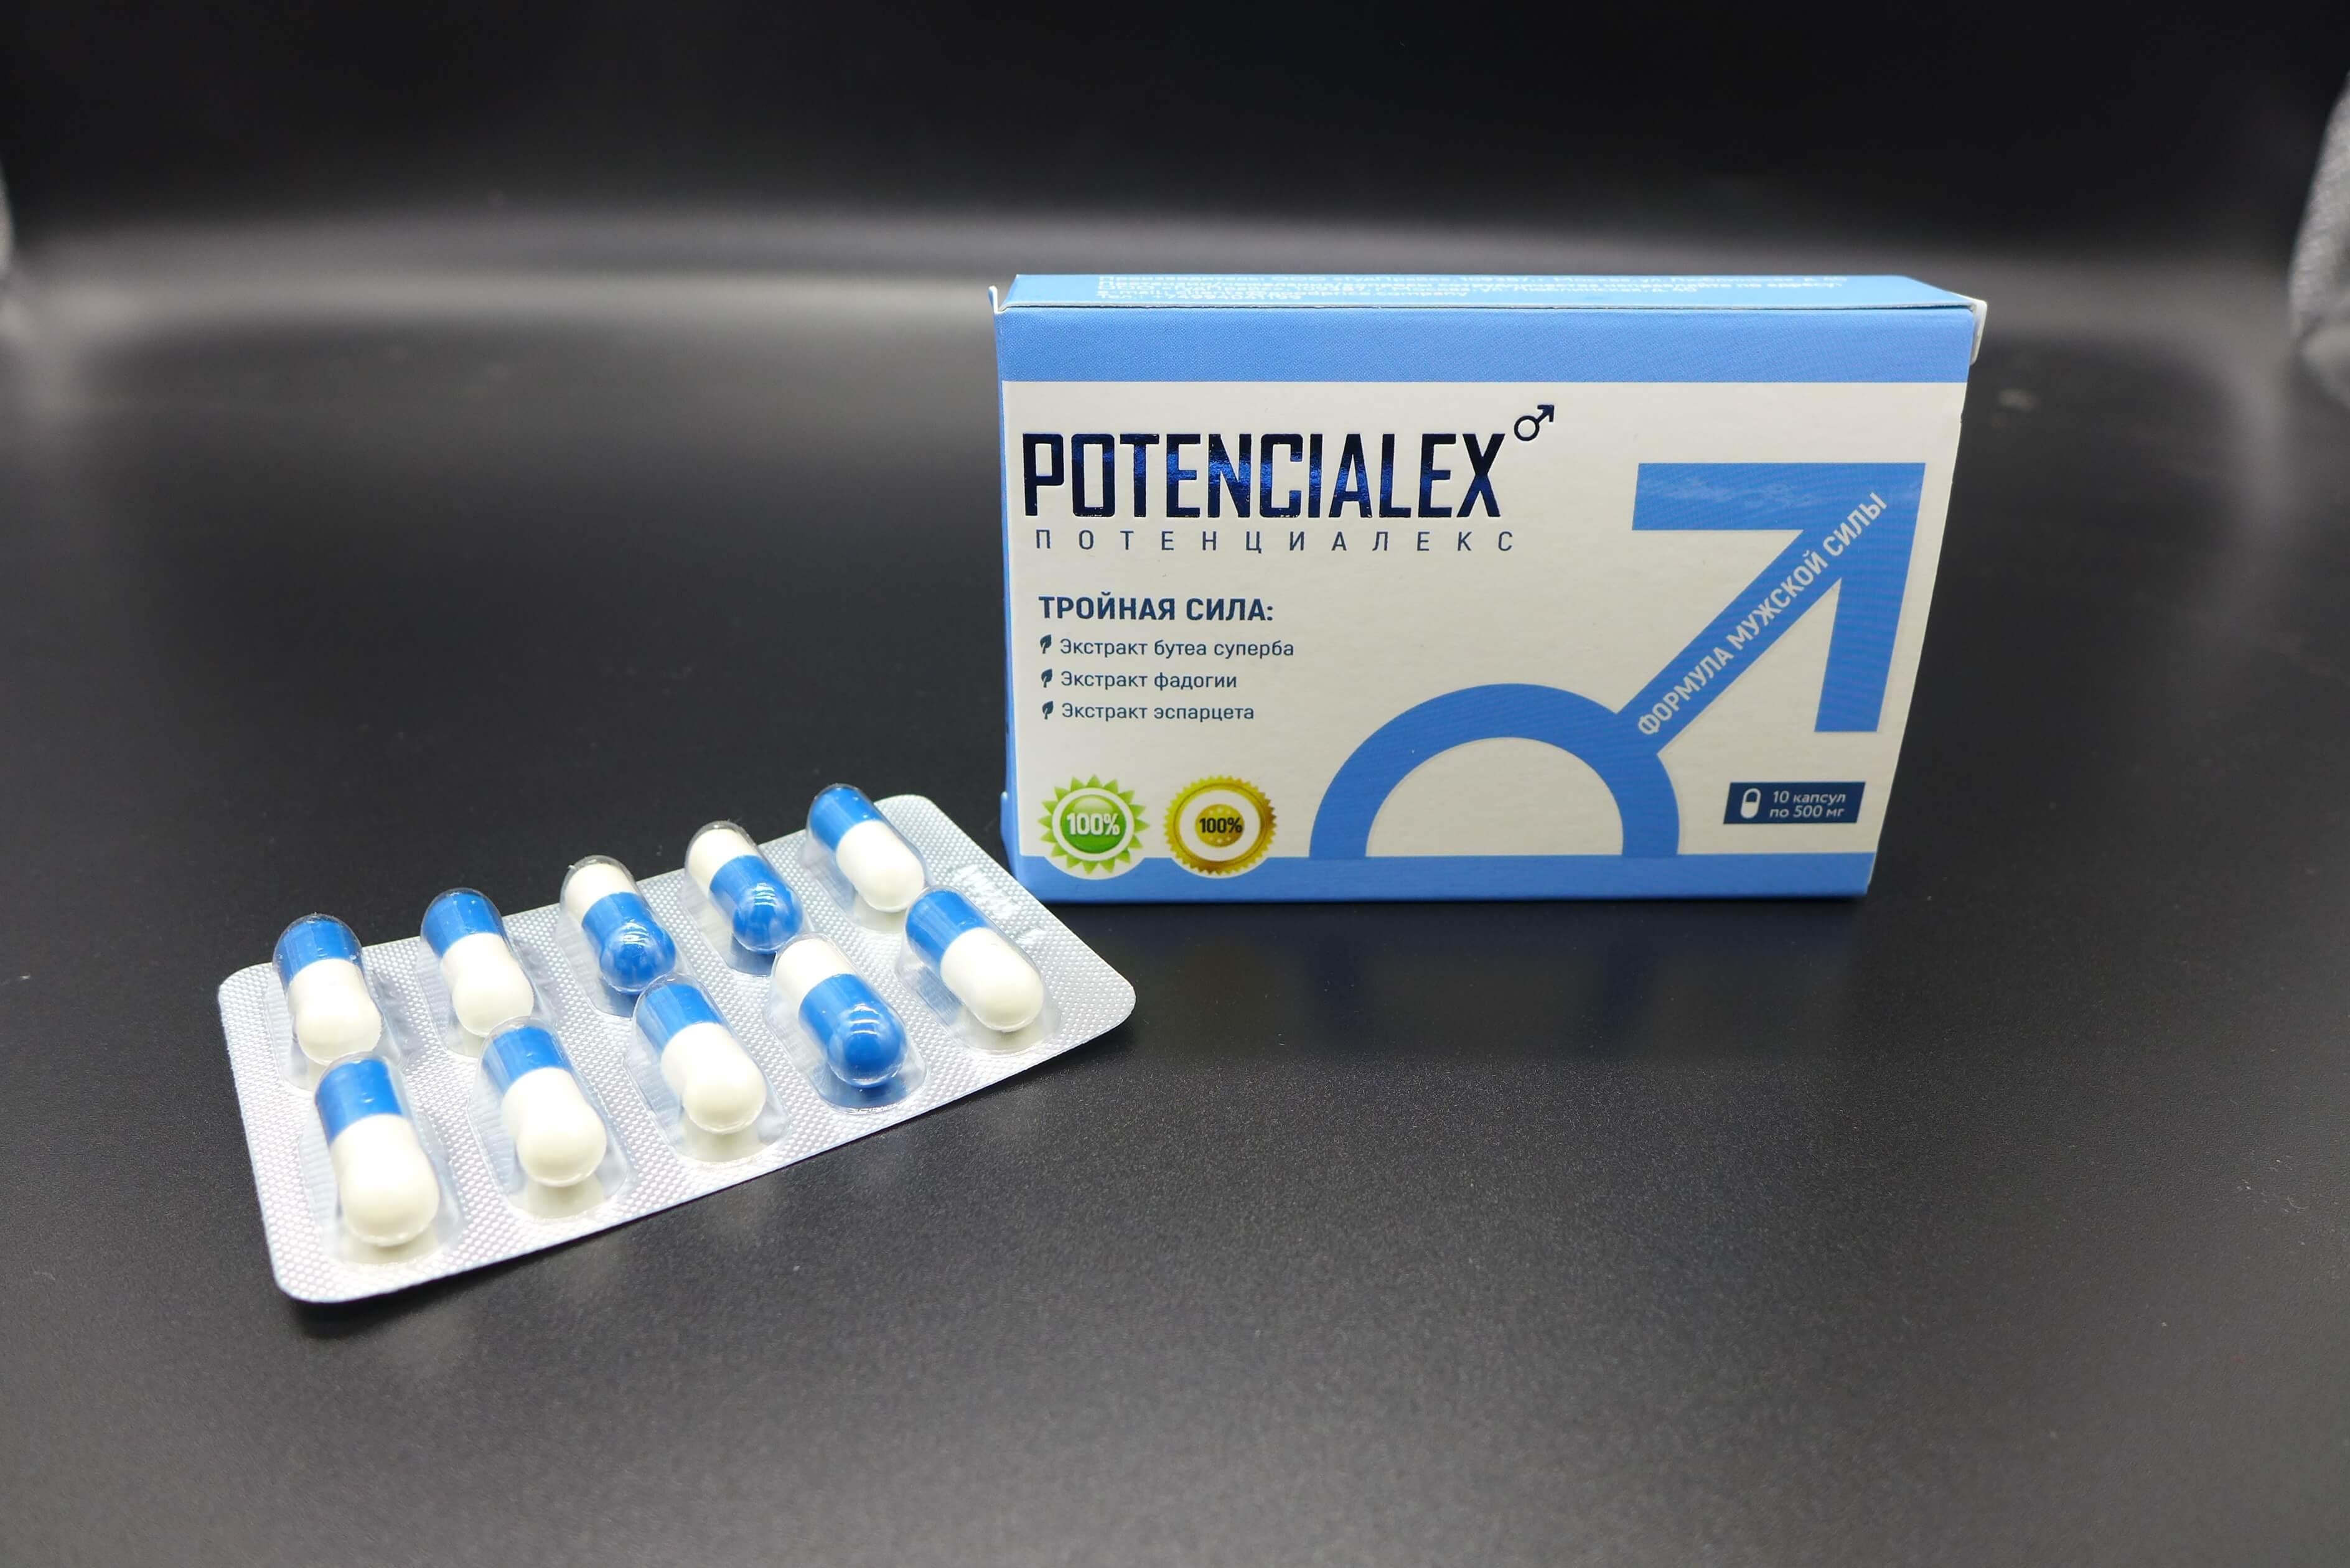 potencialex в аптеке 